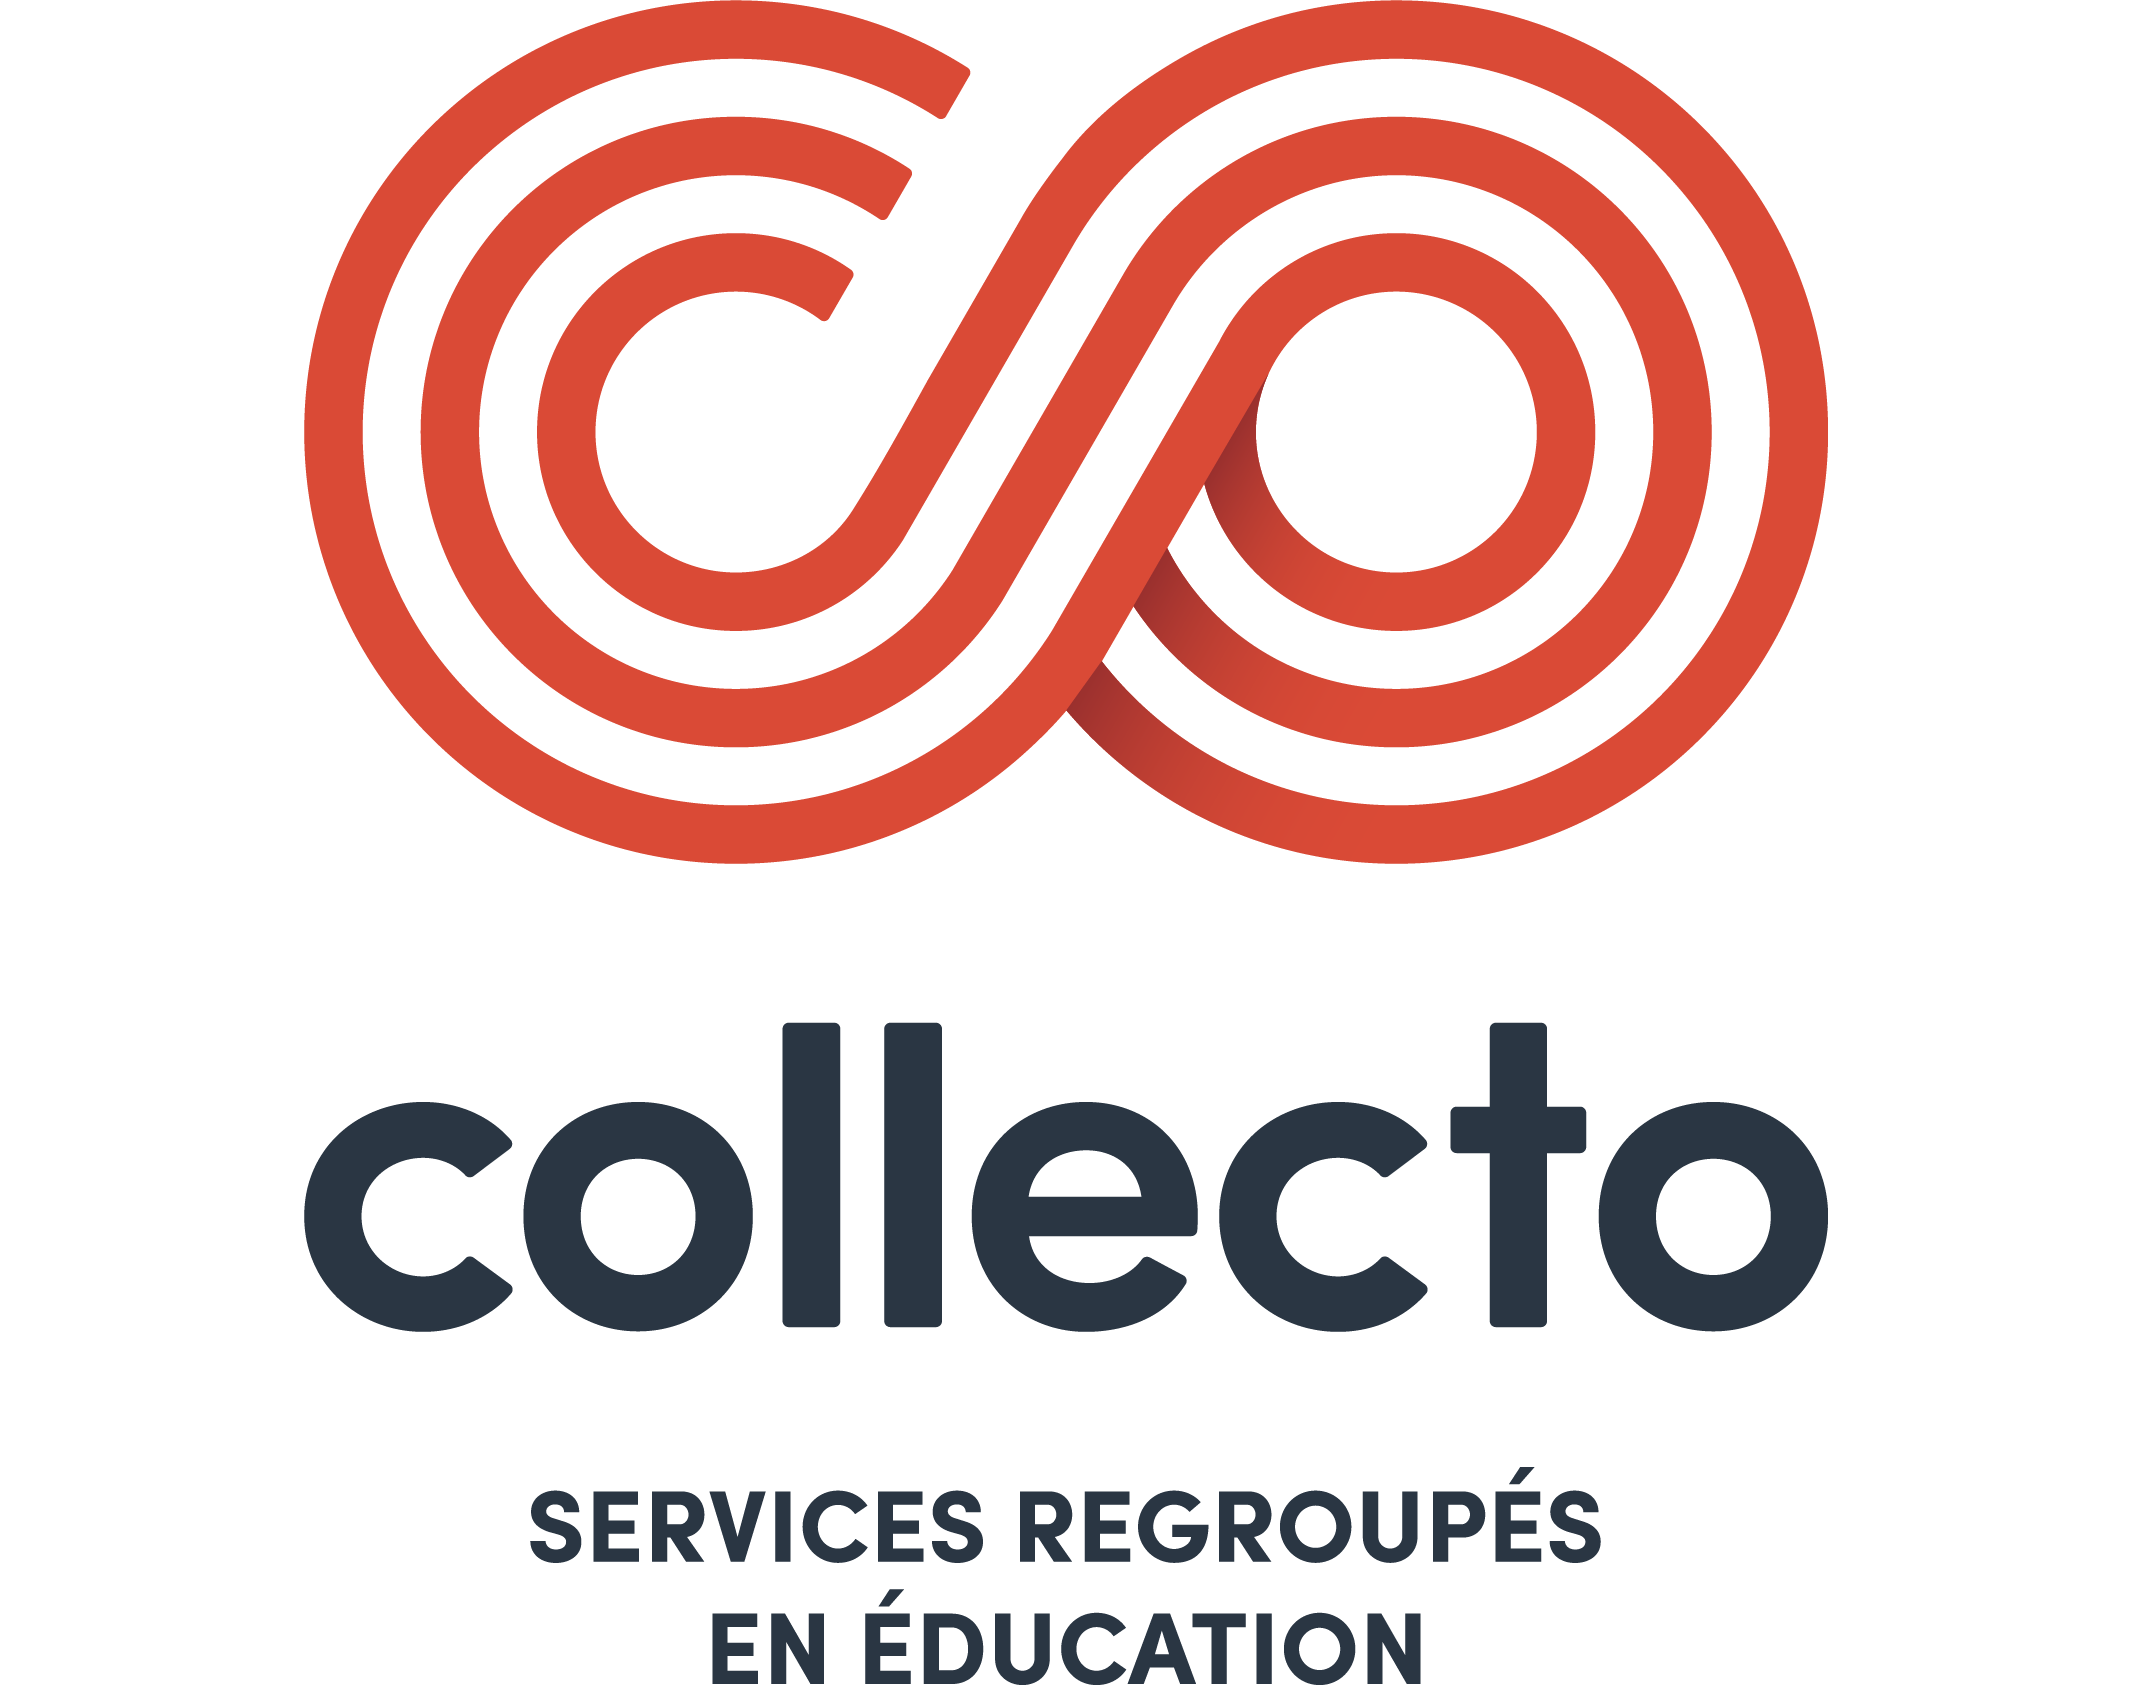 Collecto - Services regroupés en éducation